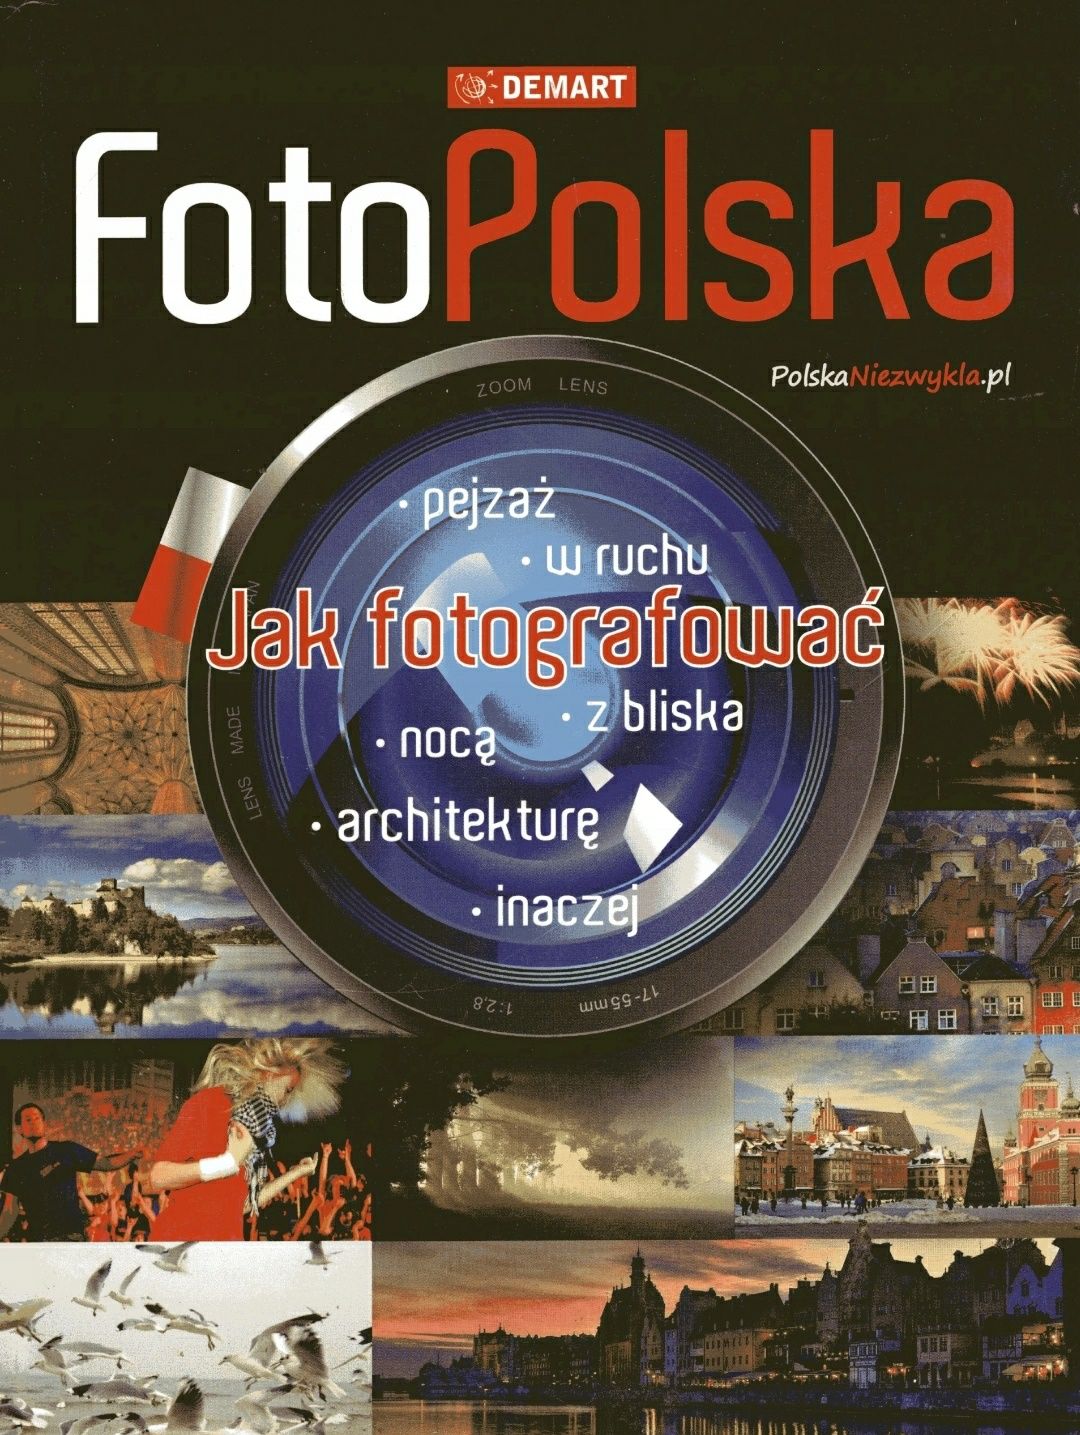 FotoPolska jak fotografować wydawnictwo demart.